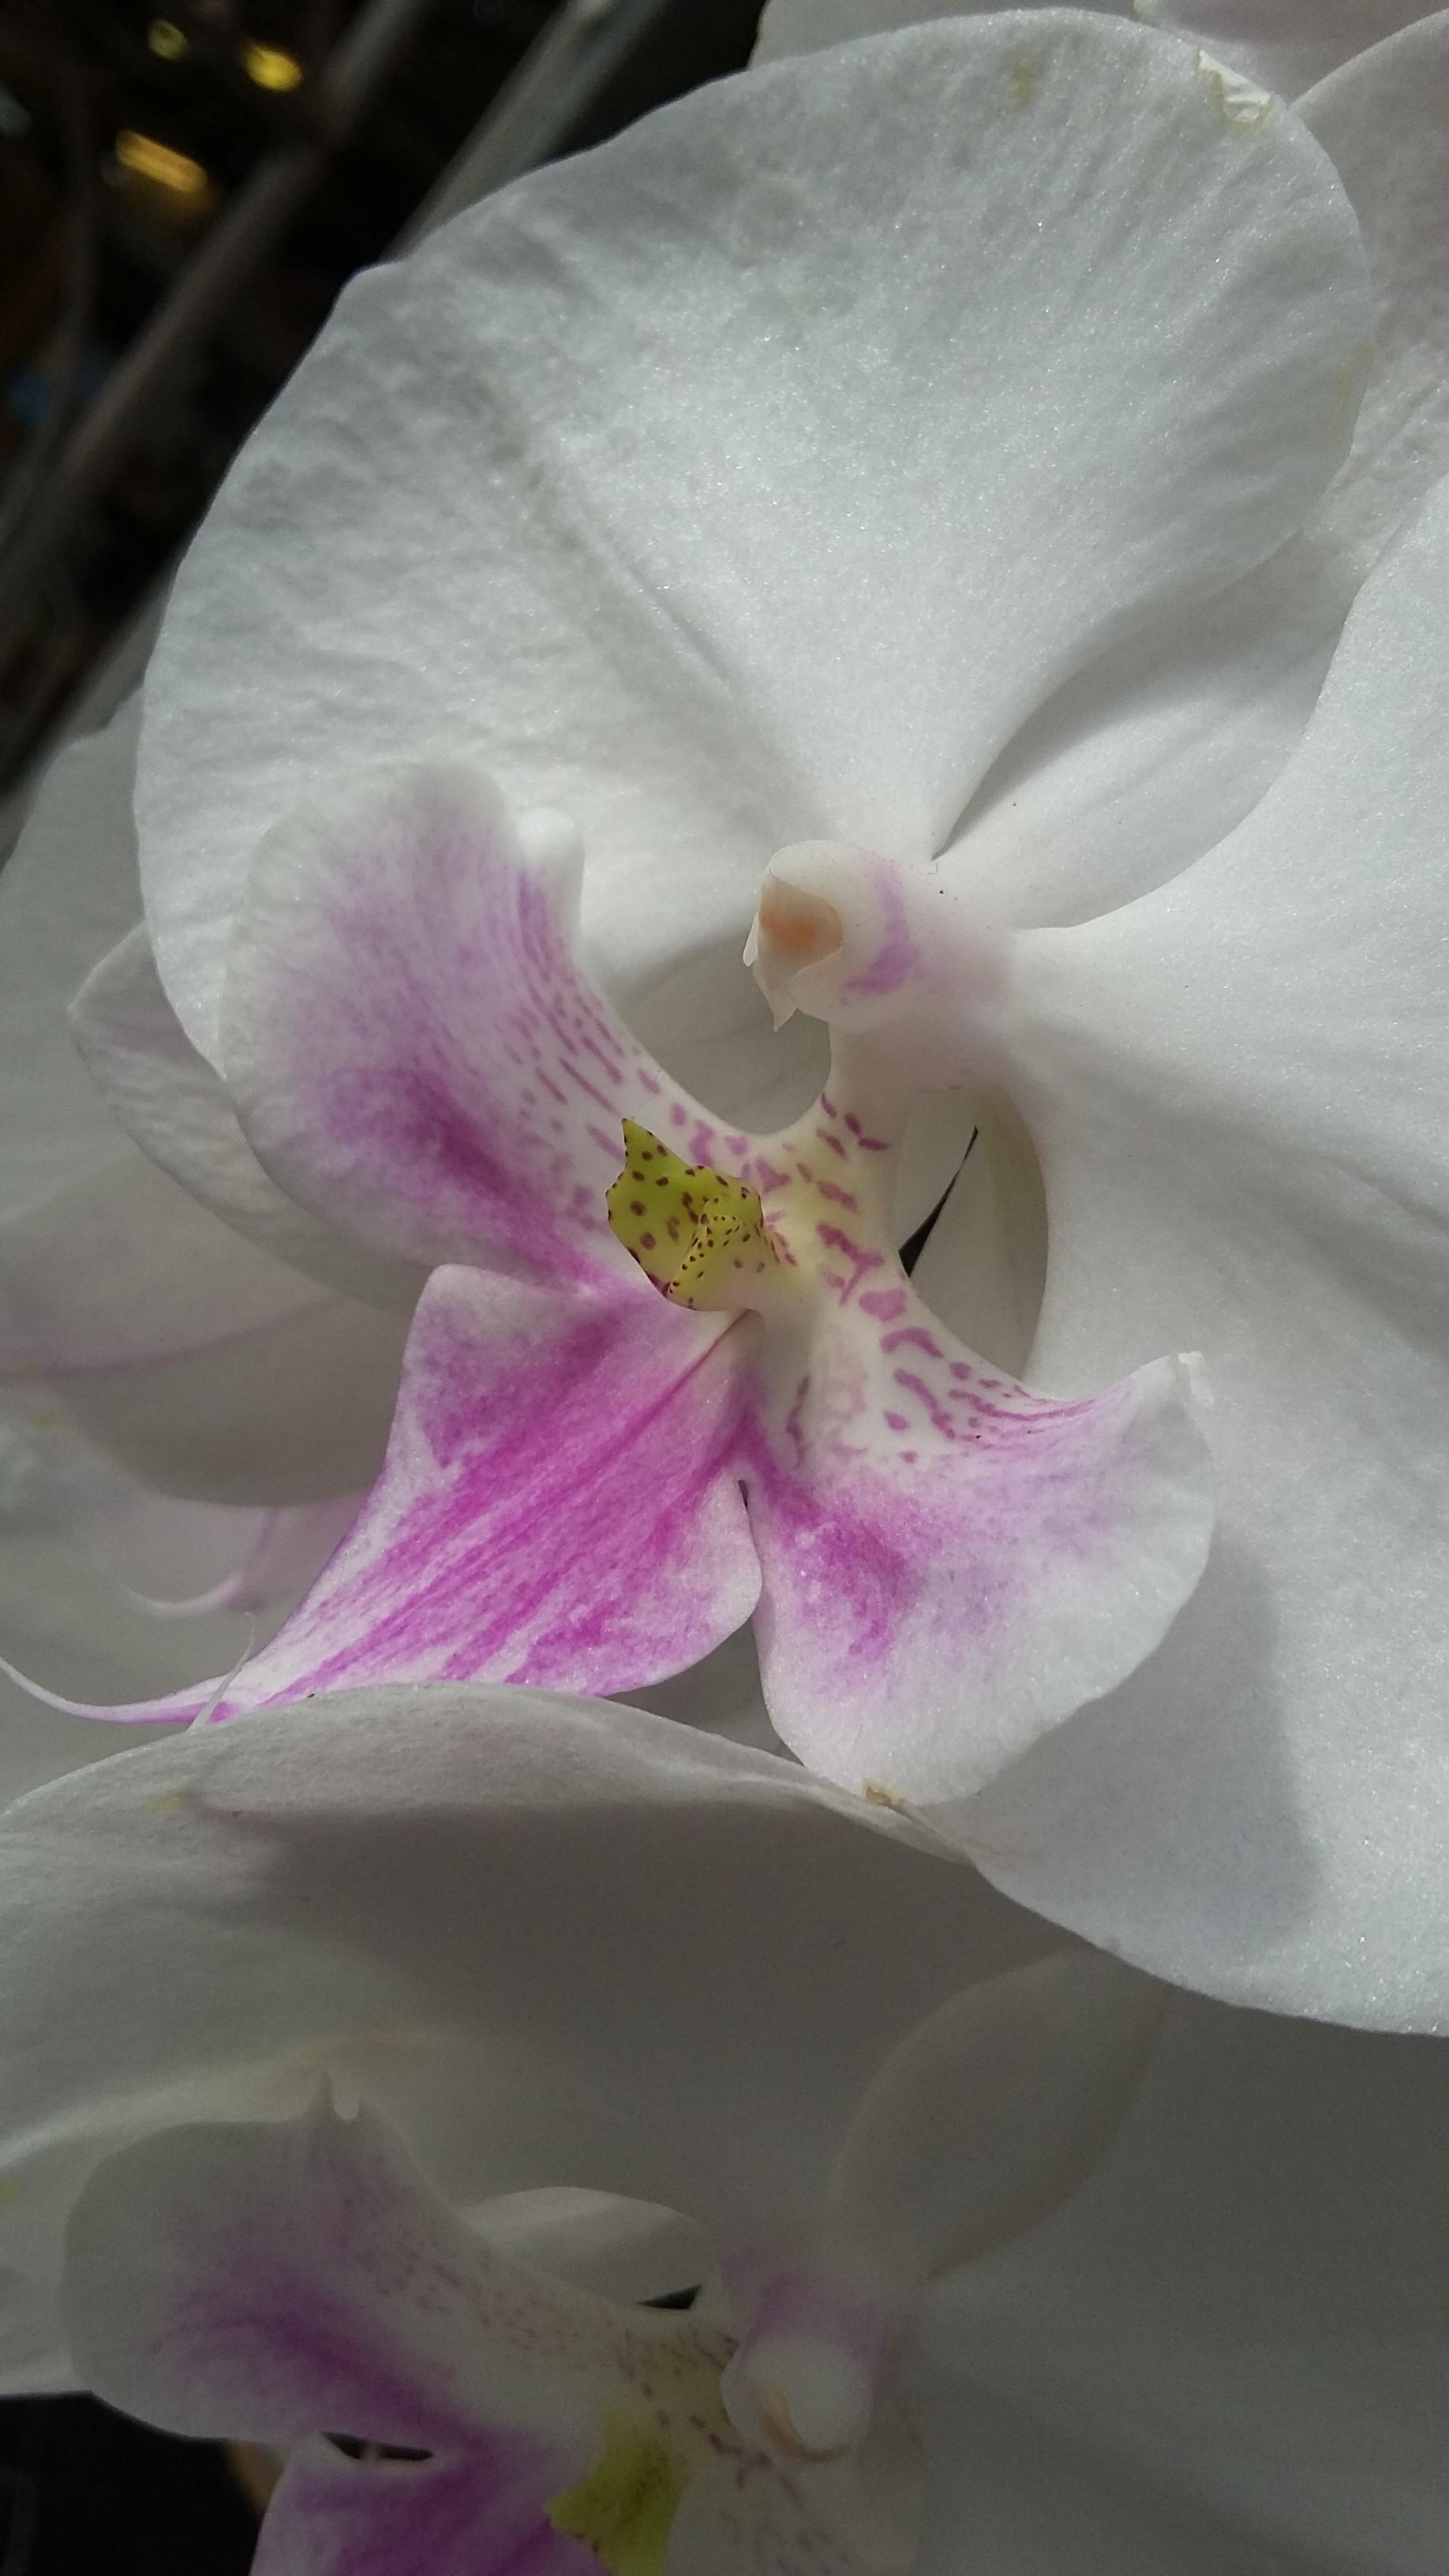 L'orchidea in primo piano:  PHALAENOPSIS